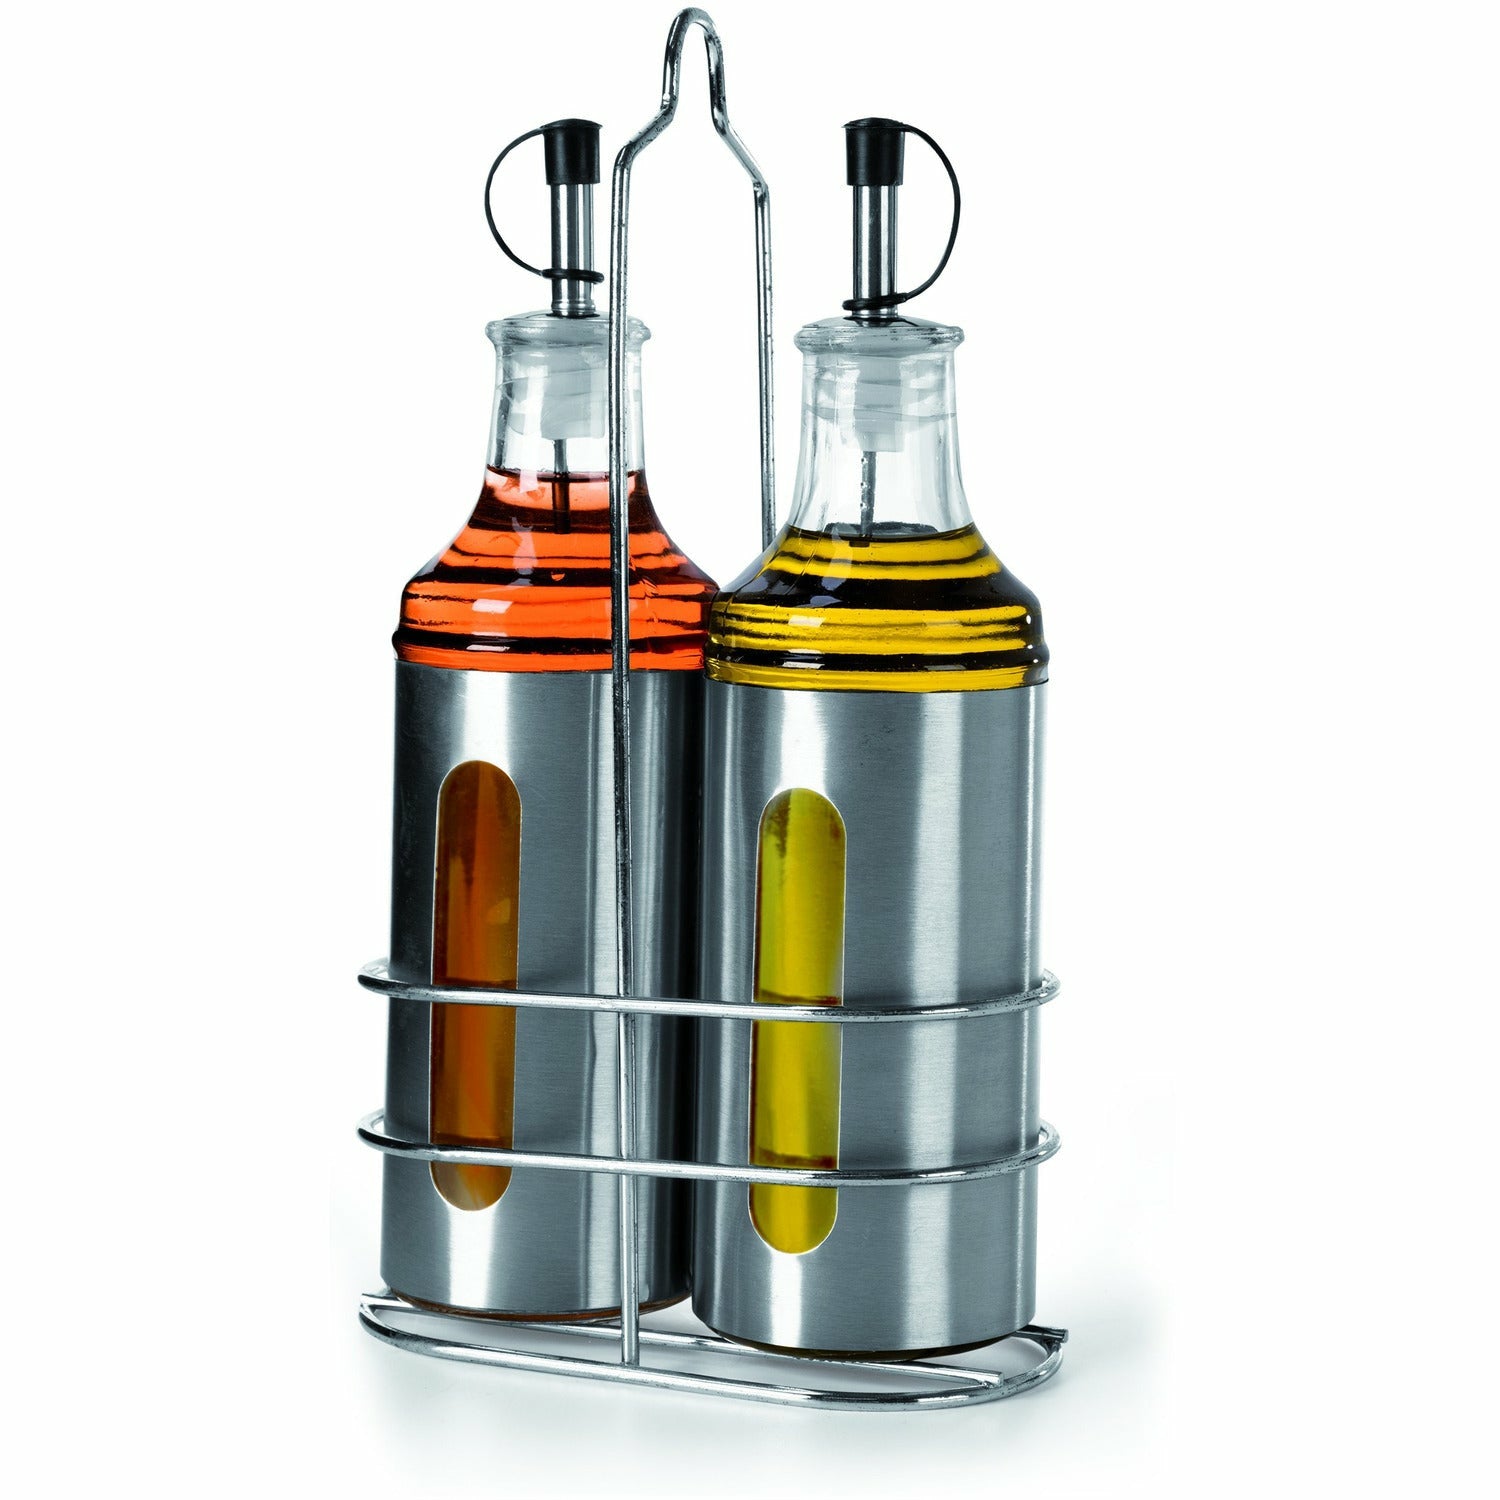 GUSTO CASA - Dosatore spray olio/aceto 250 ml – Shop On Line Happy Casa  Store